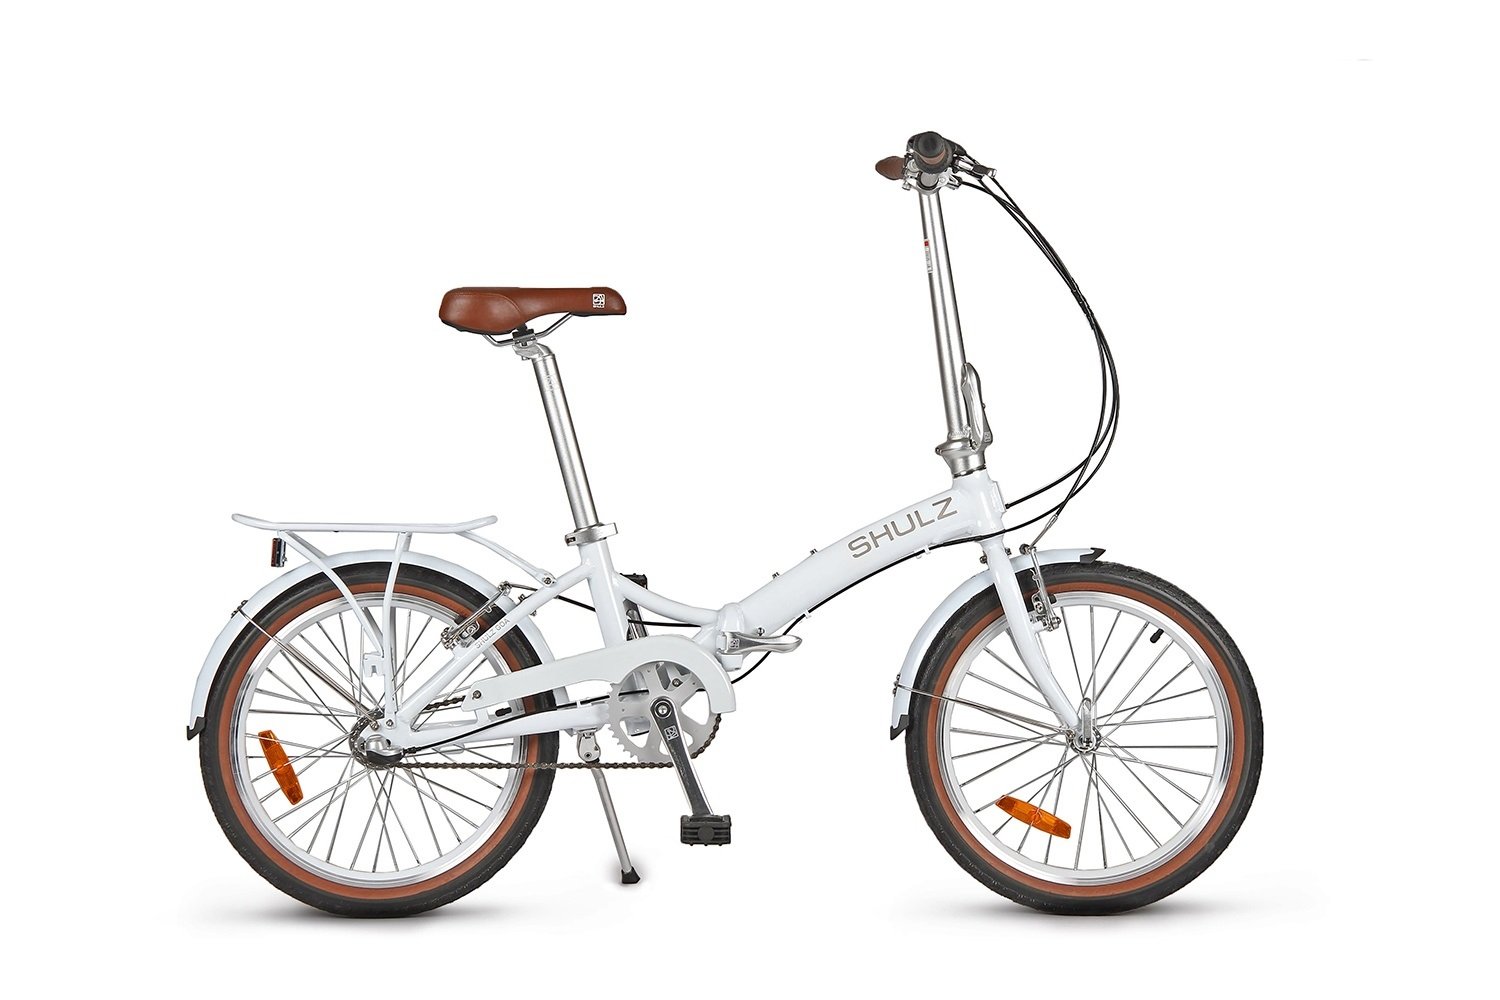 Складной велосипед SHULZ GOA V '16 складной белый, 2021, 16GVWH комфортный велосипед haro lxi flow 1 29 год 2021 ростовка 20